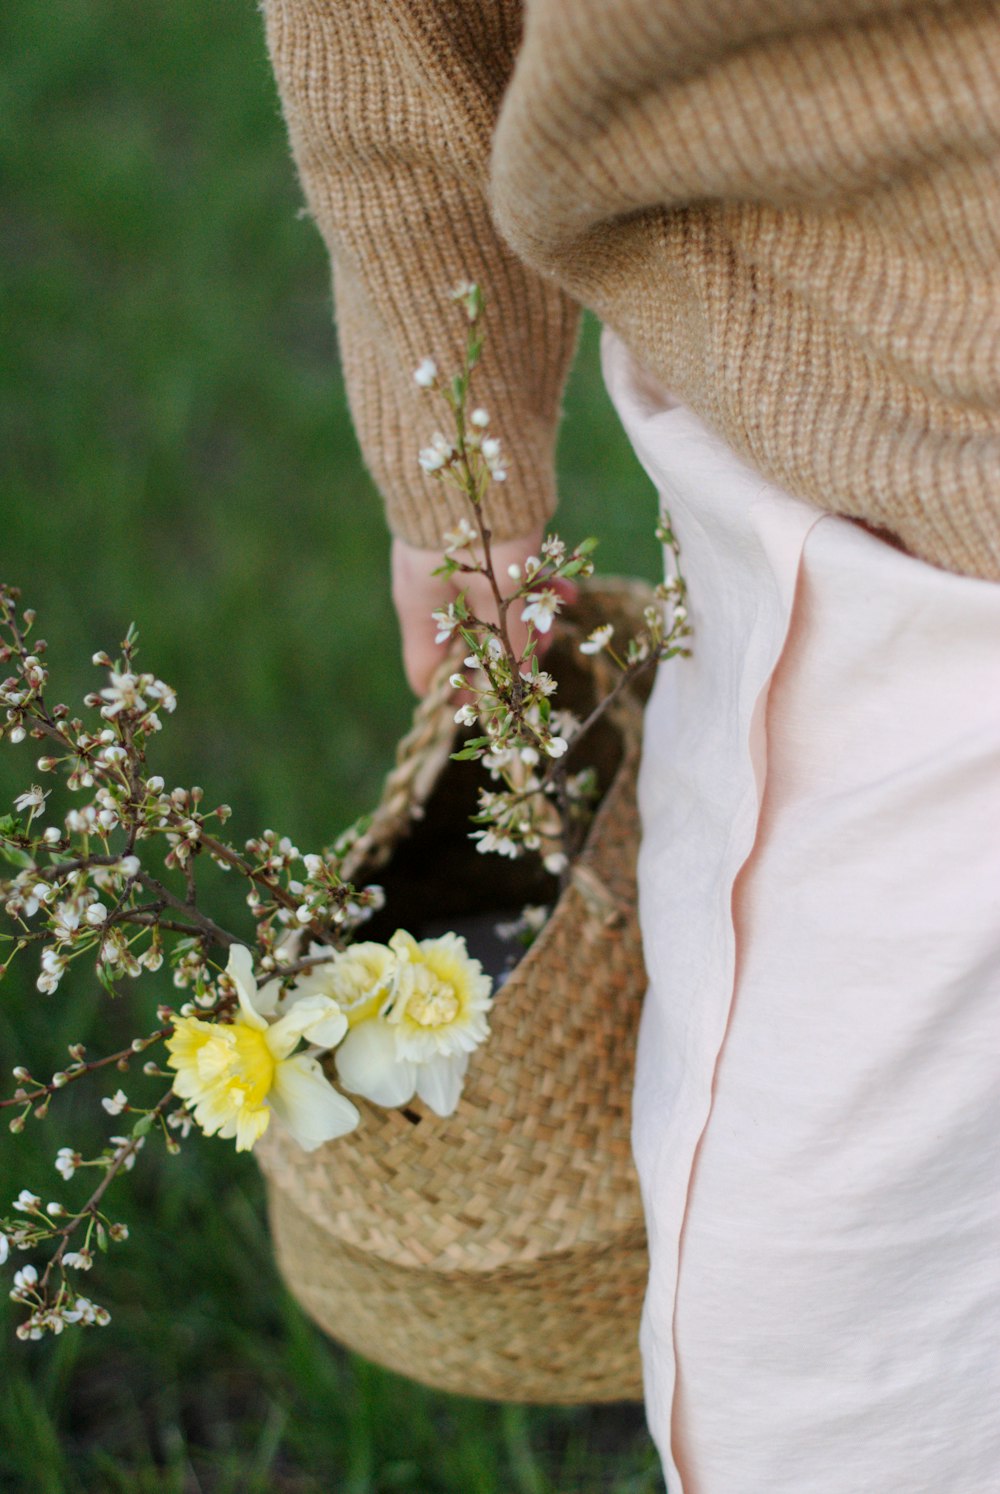 fiore bianco e giallo su tessuto a maglia marrone